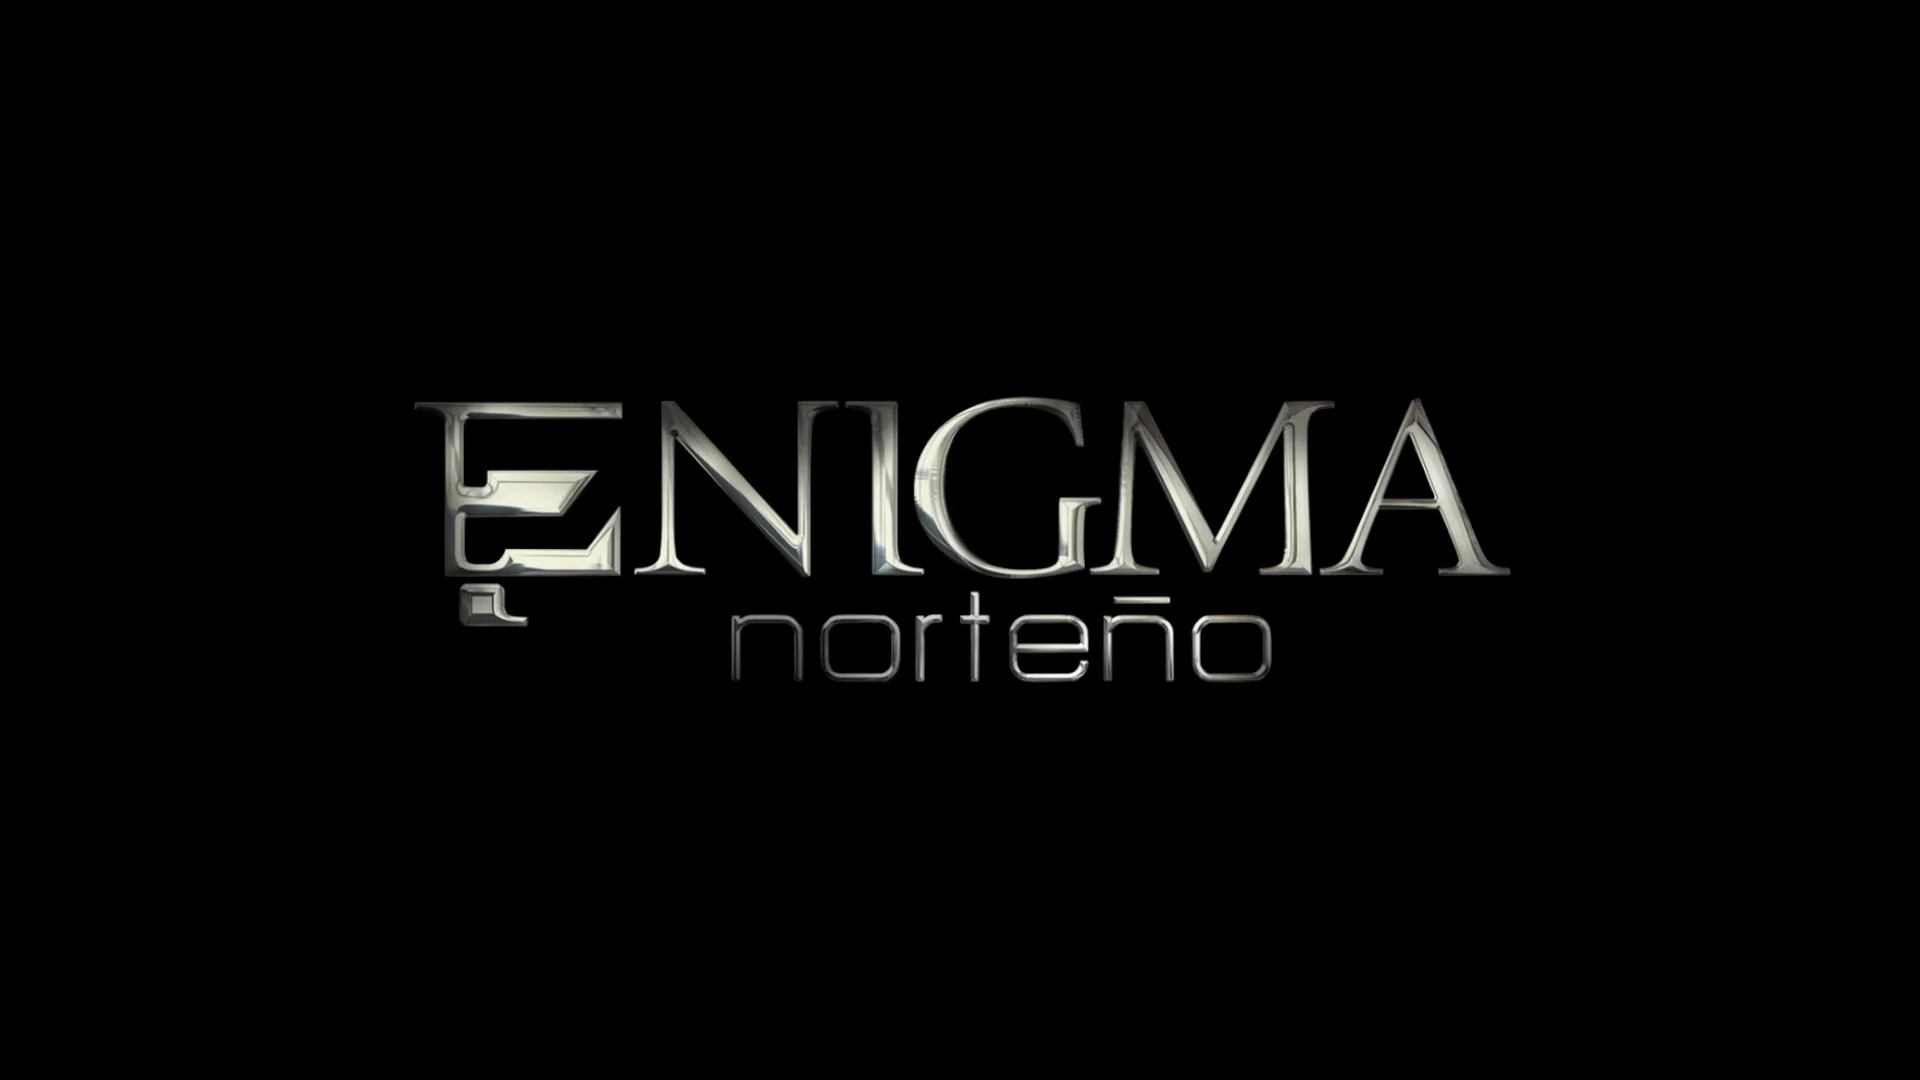 Enigma El morado (Rock mexicano) : esh : Free Download, Borrow